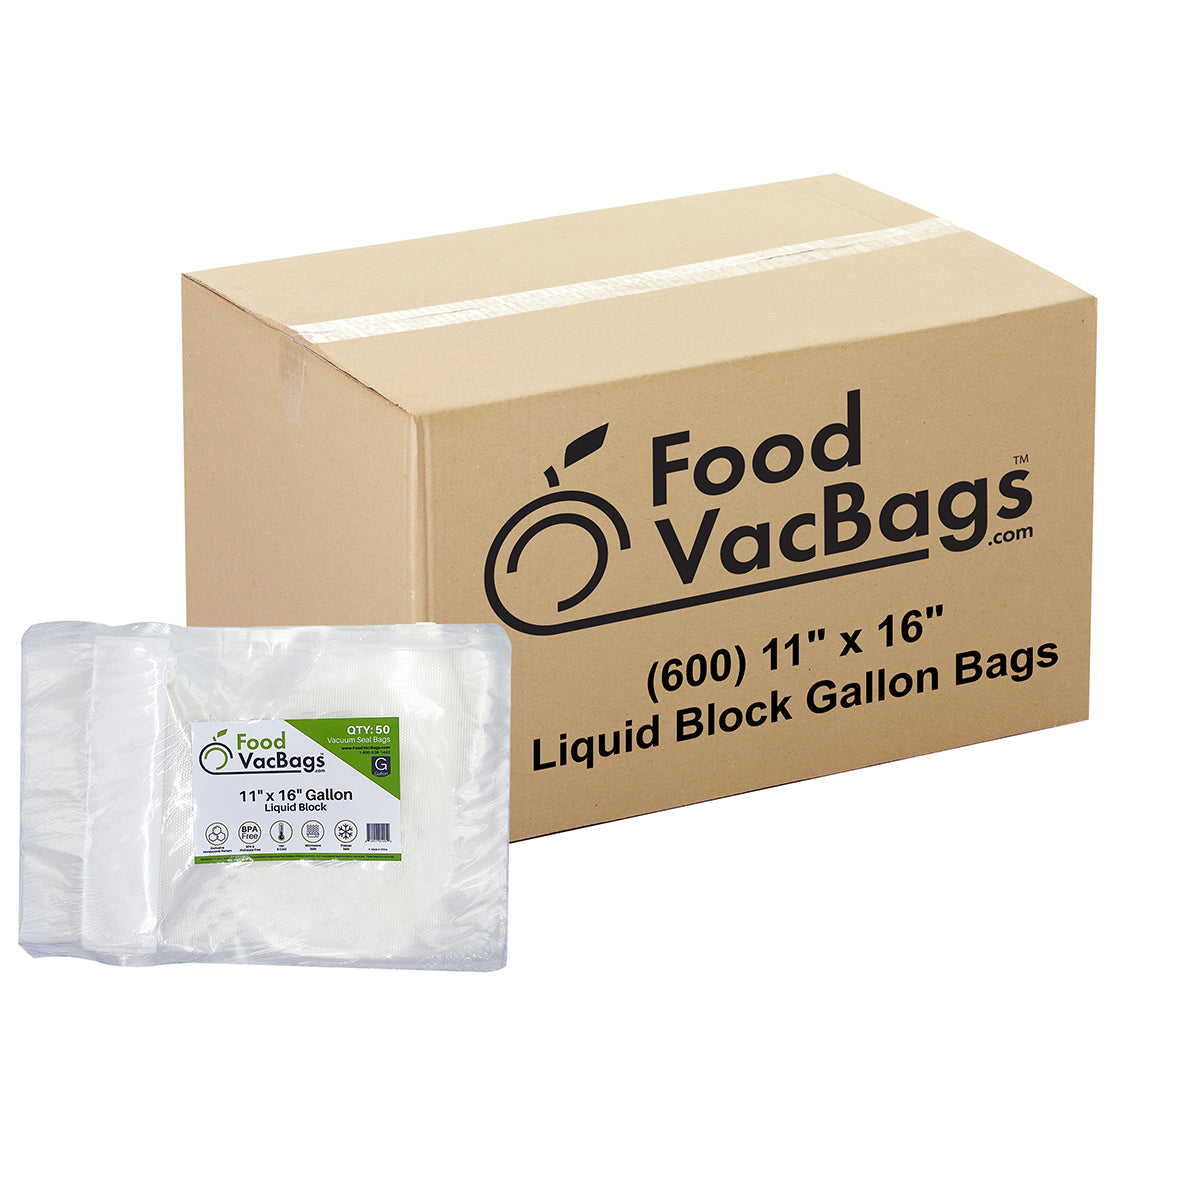 https://foodvacbags.com/cdn/shop/products/11x16-LiquidBlock-600.jpg?v=1637184585